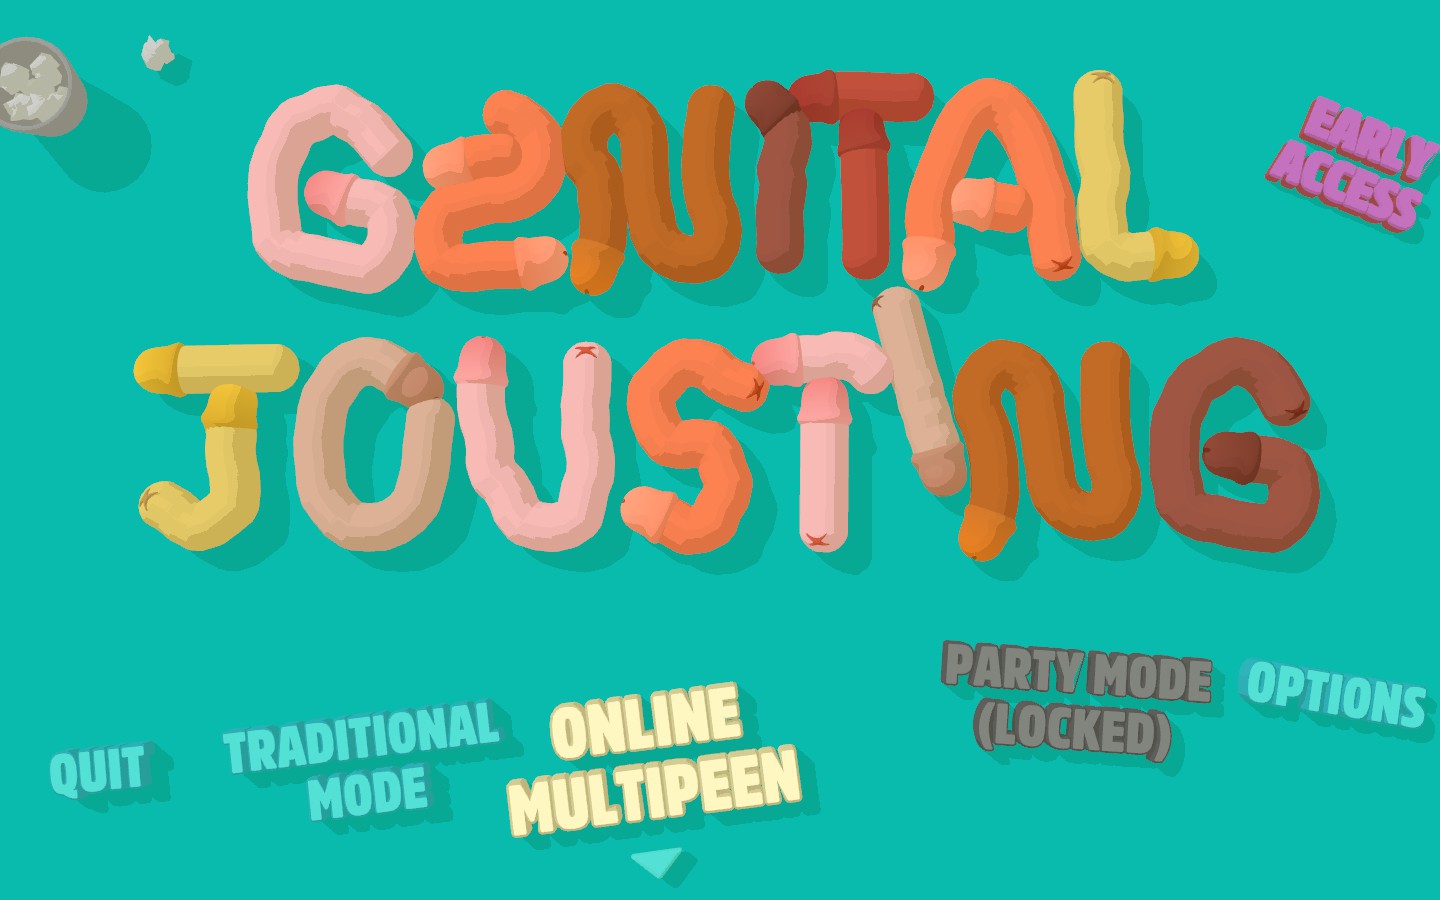 genital jousting stwamspy